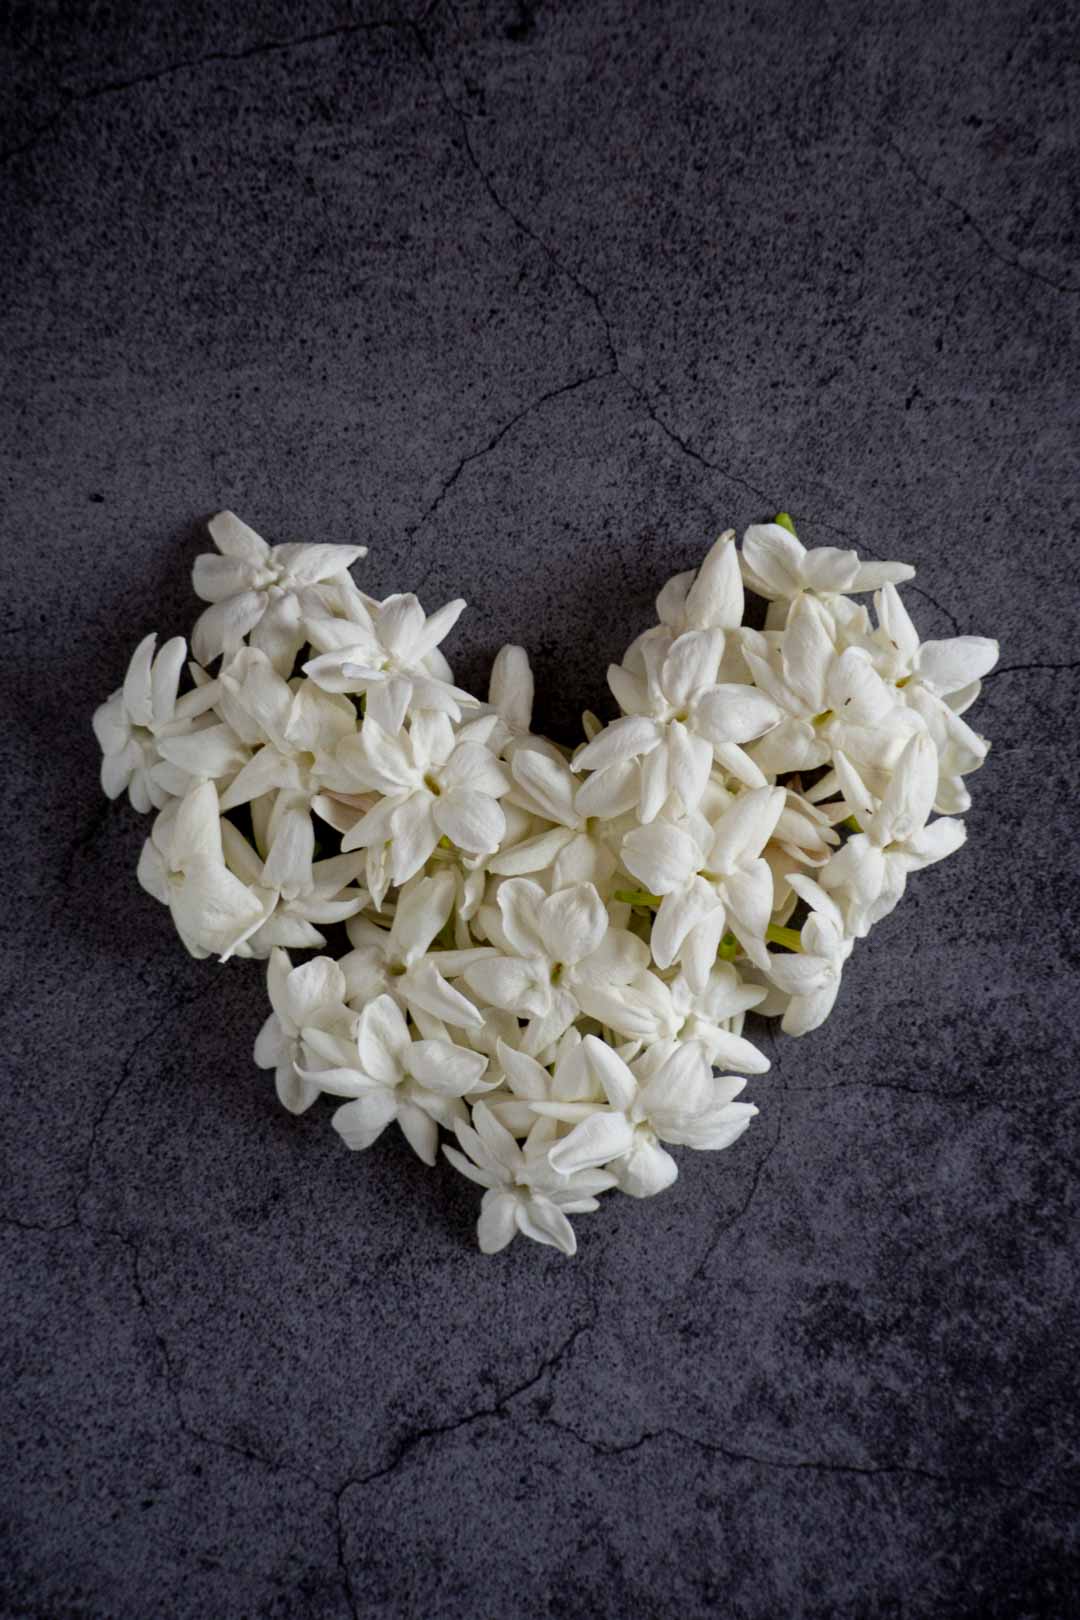 jasmine flowers arranged in a heart shape